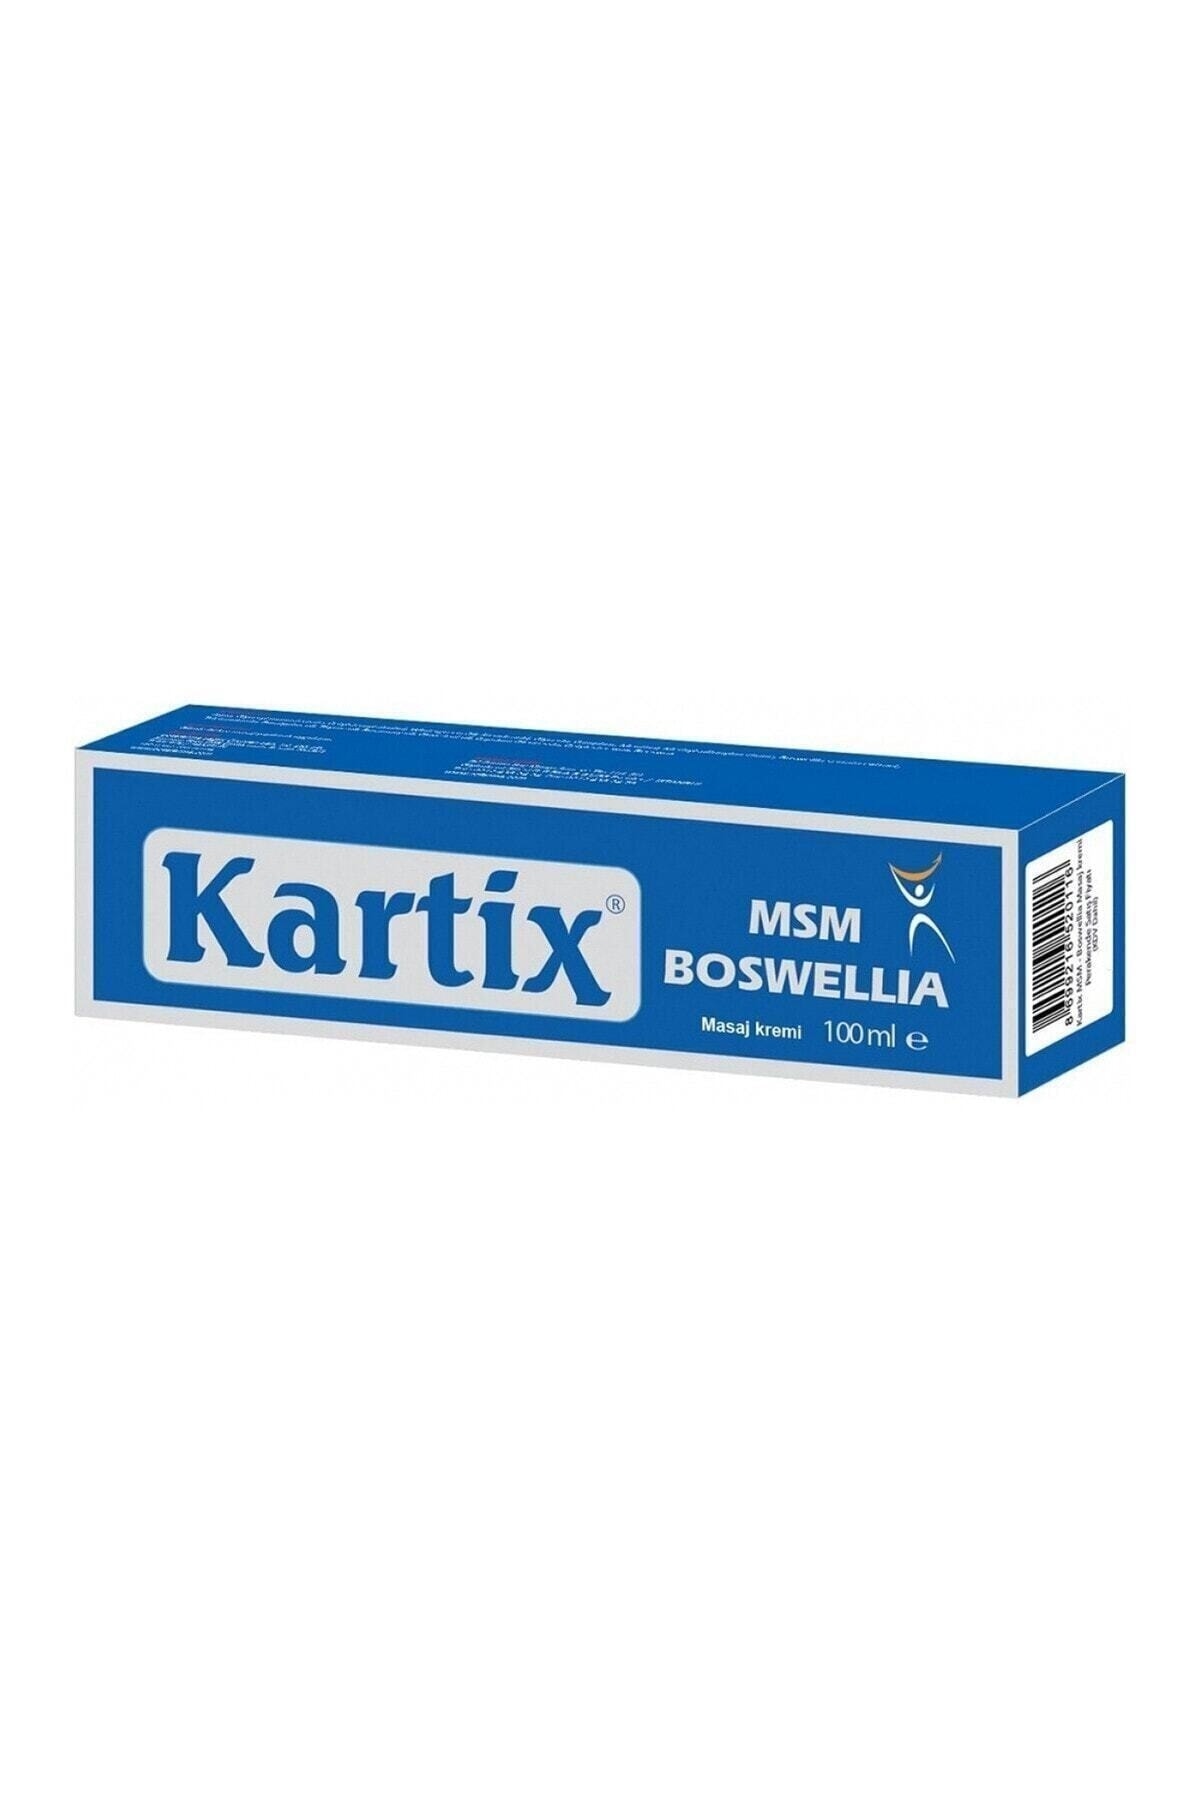 Kartix Krem (100 ml)